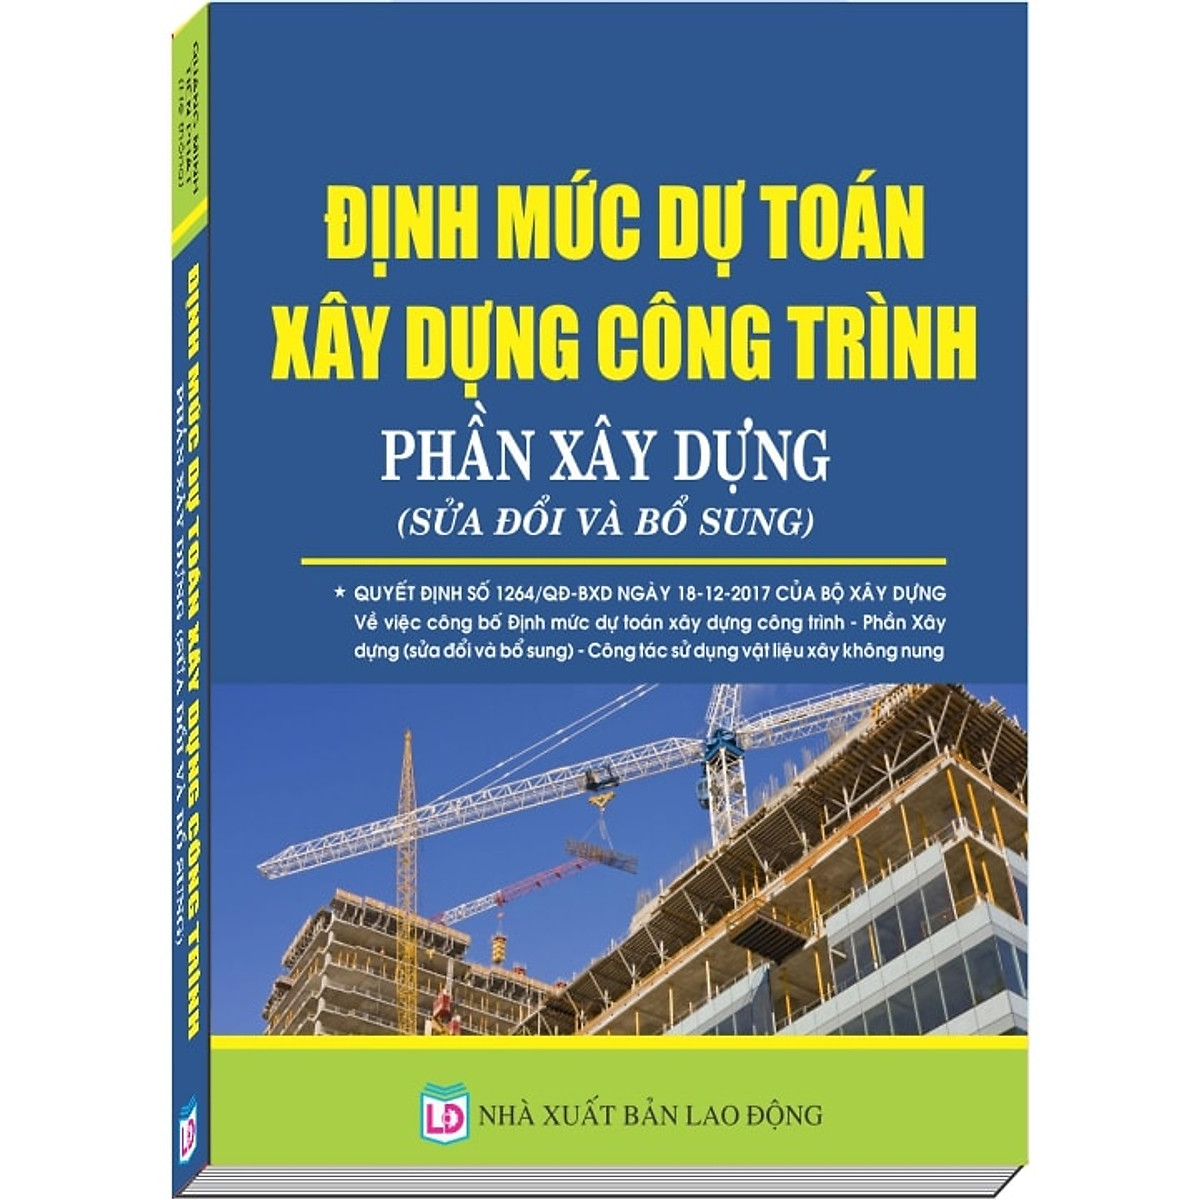 Định mức dự toán công trình do tác giả Quang Minh